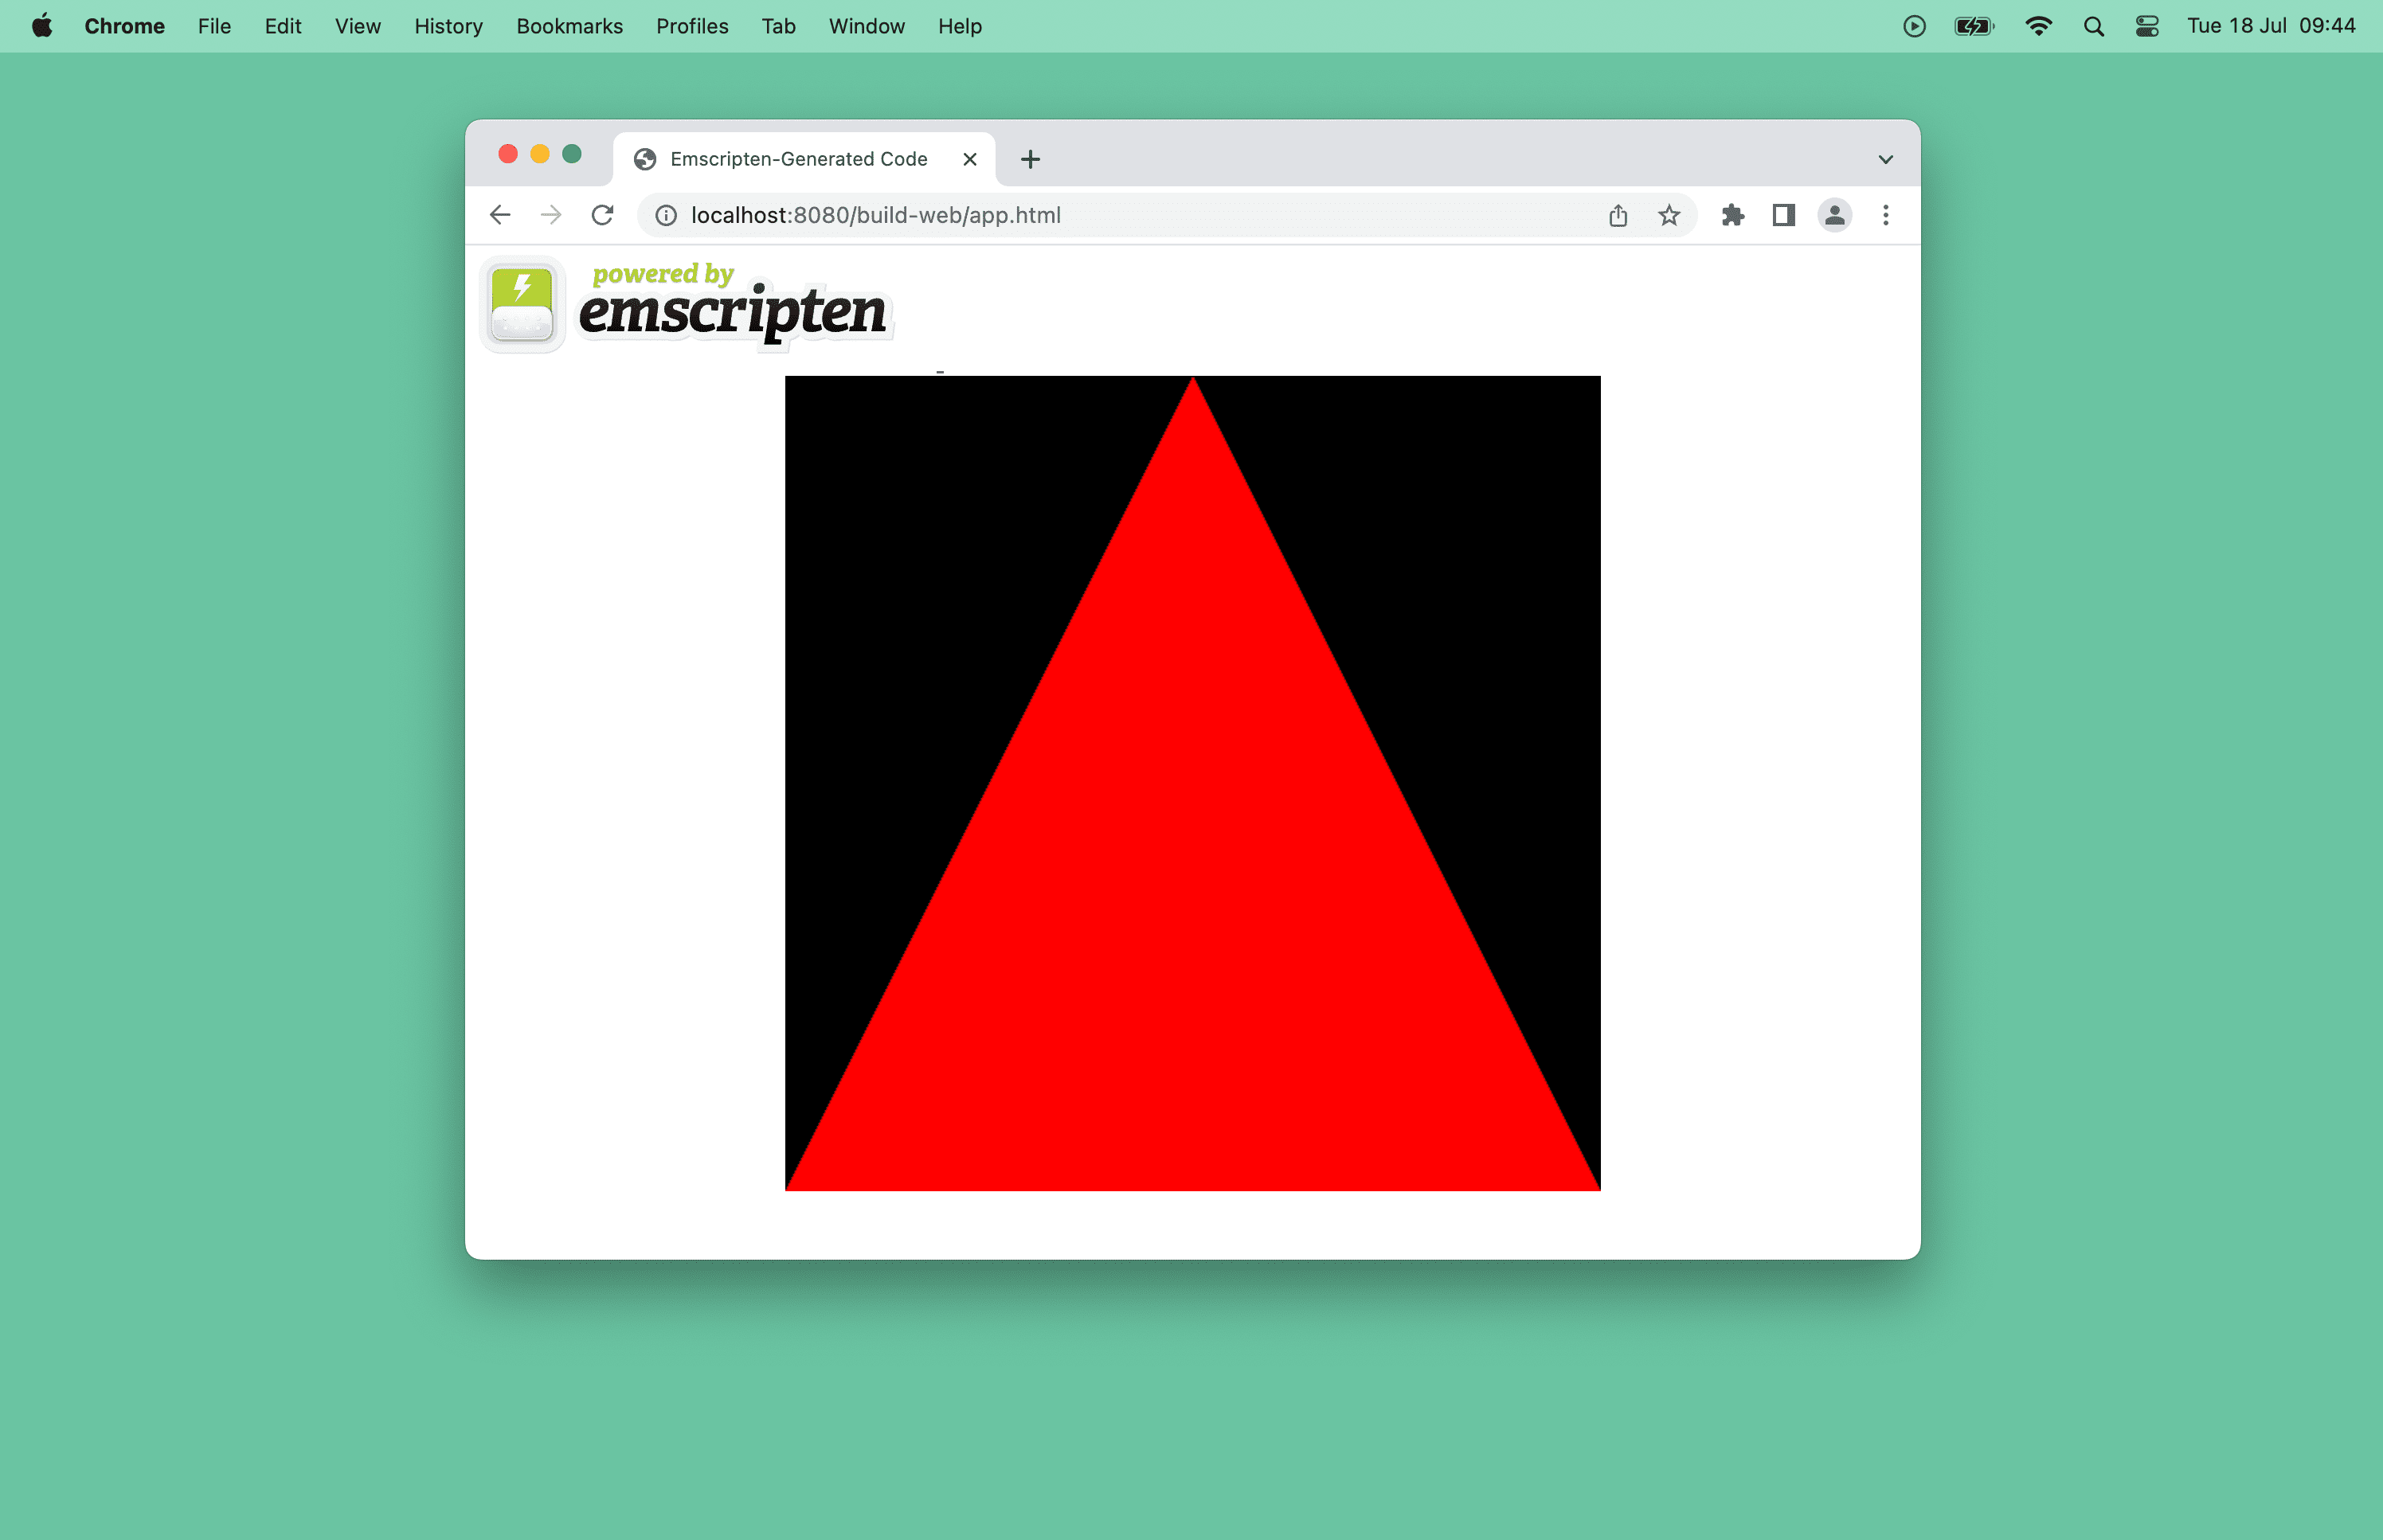 Tarayıcı penceresindeki kırmızı bir üçgenin ekran görüntüsü.